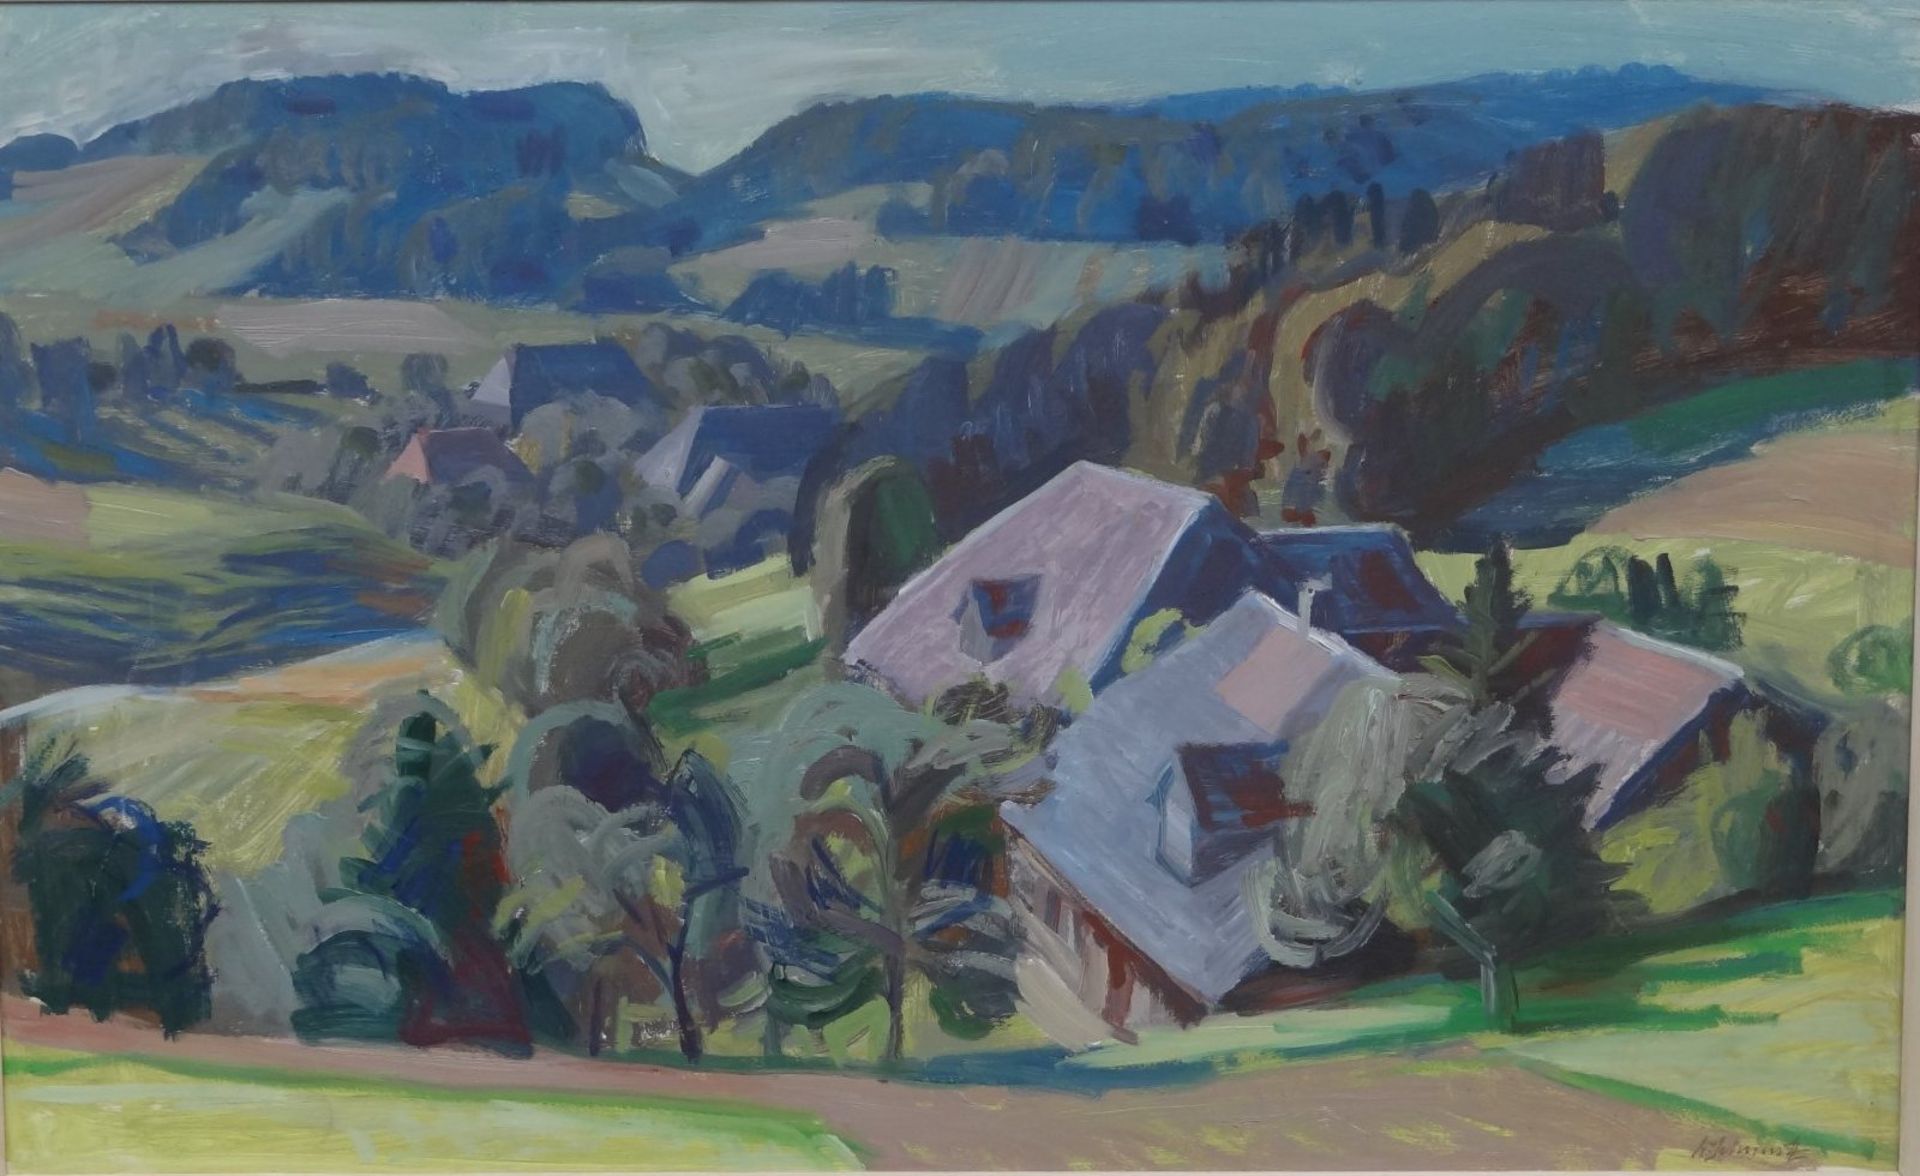 Werner SCHMUTZ (1910-2003) "In den Wynigerbergen" Schweiz, Öl/Malfaser, 52 x 82 cm, gerahmt, RG